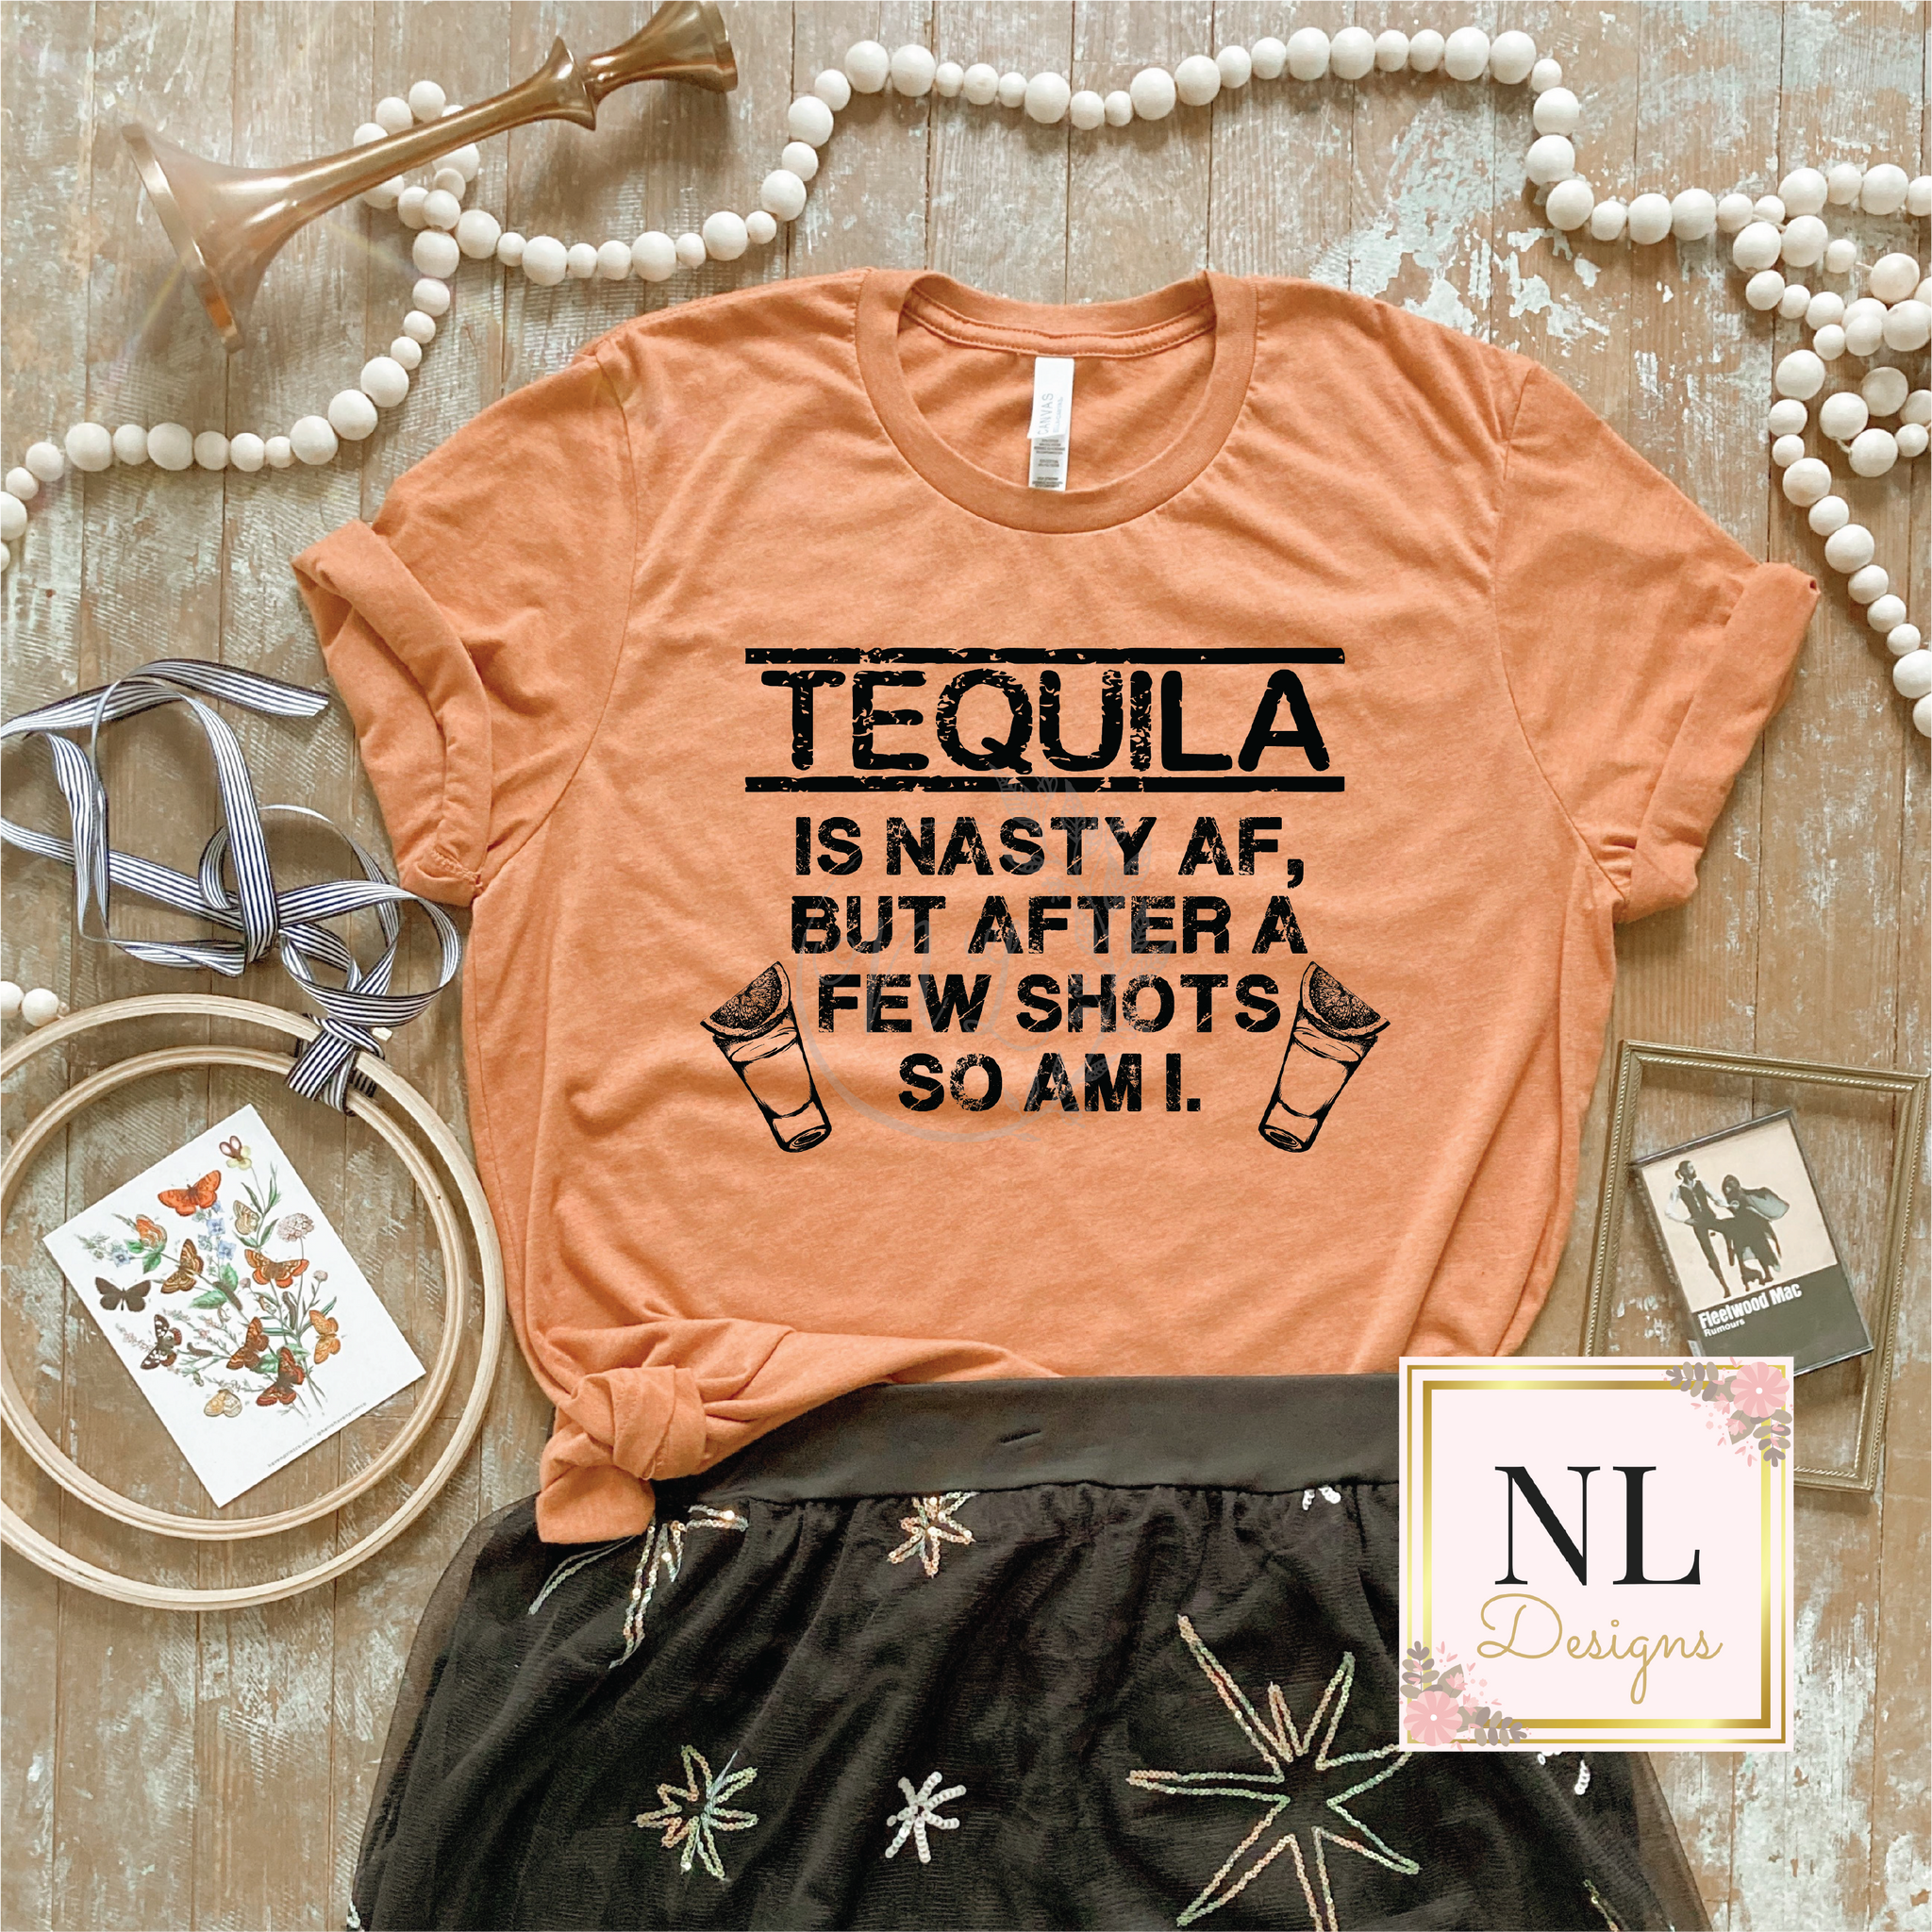 Tequila is Nasty AF